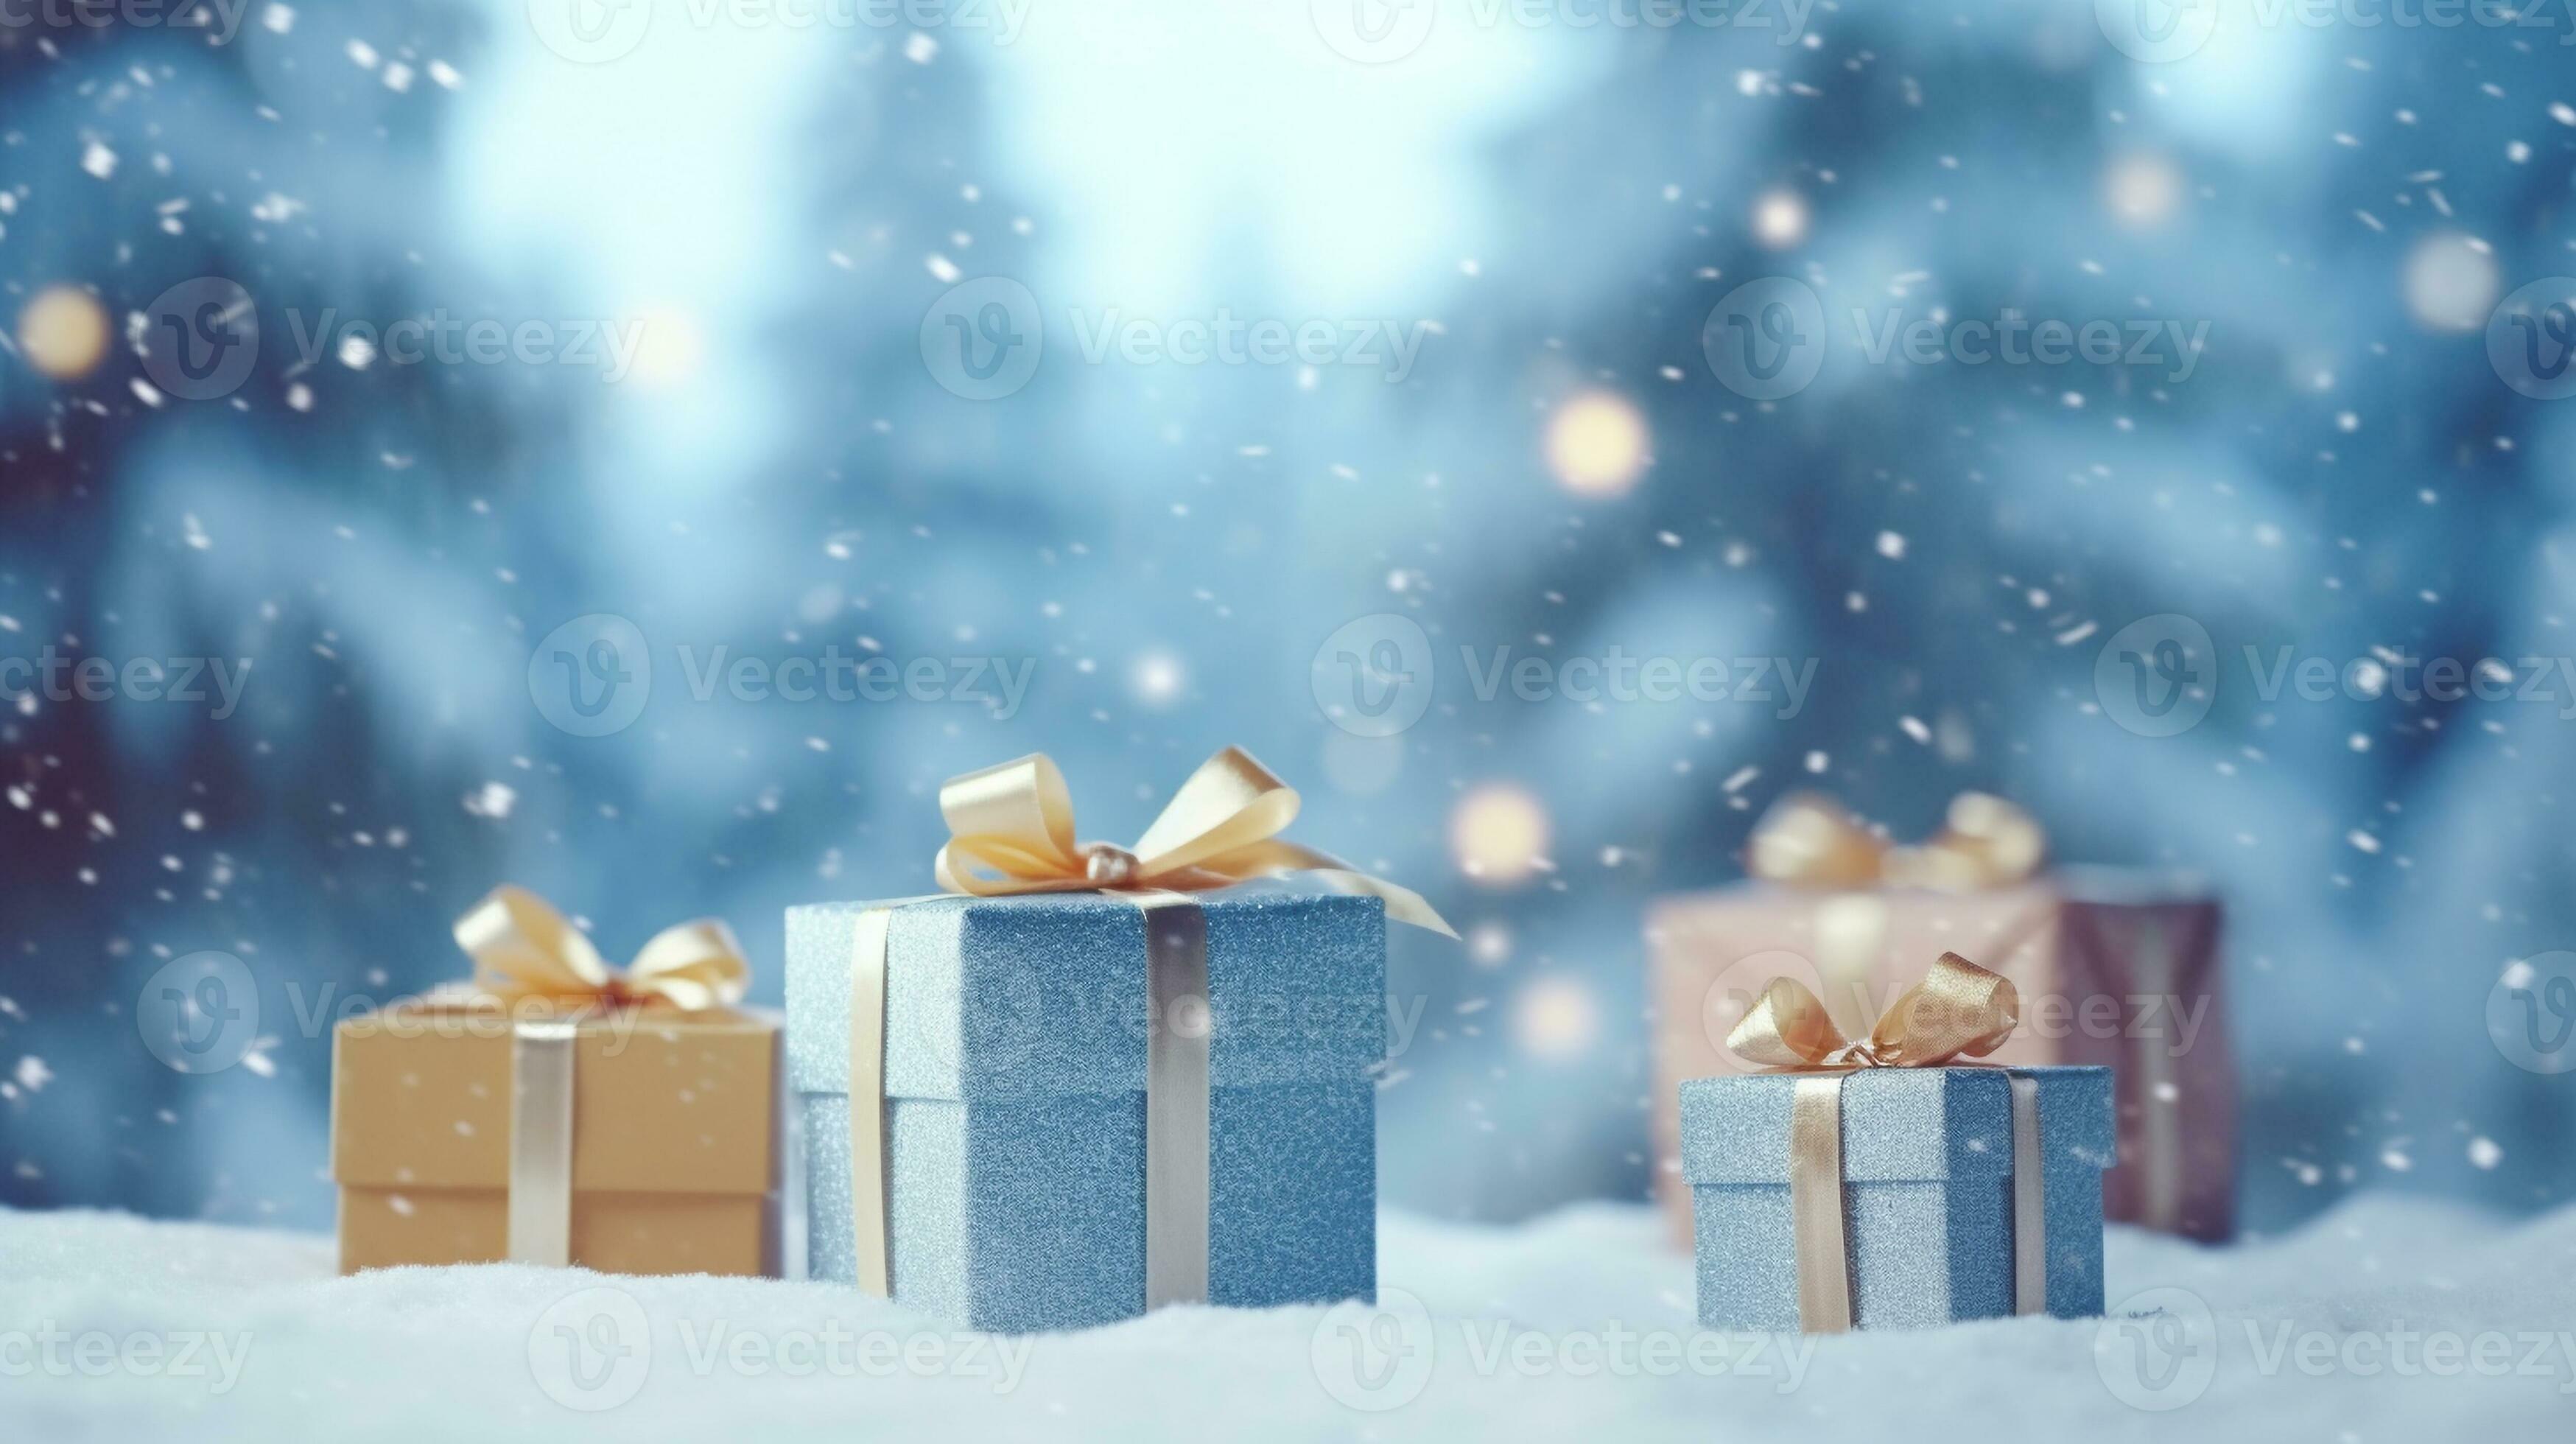 https://static.vecteezy.com/ti/fotos-kostenlos/p2/27824732-geschenk-box-auf-tabelle-mit-verwischen-winter-kiefer-wald-hintergrund-zum-besondere-weihnachten-und-neu-jahr-urlaub-generativ-ai-foto.jpg